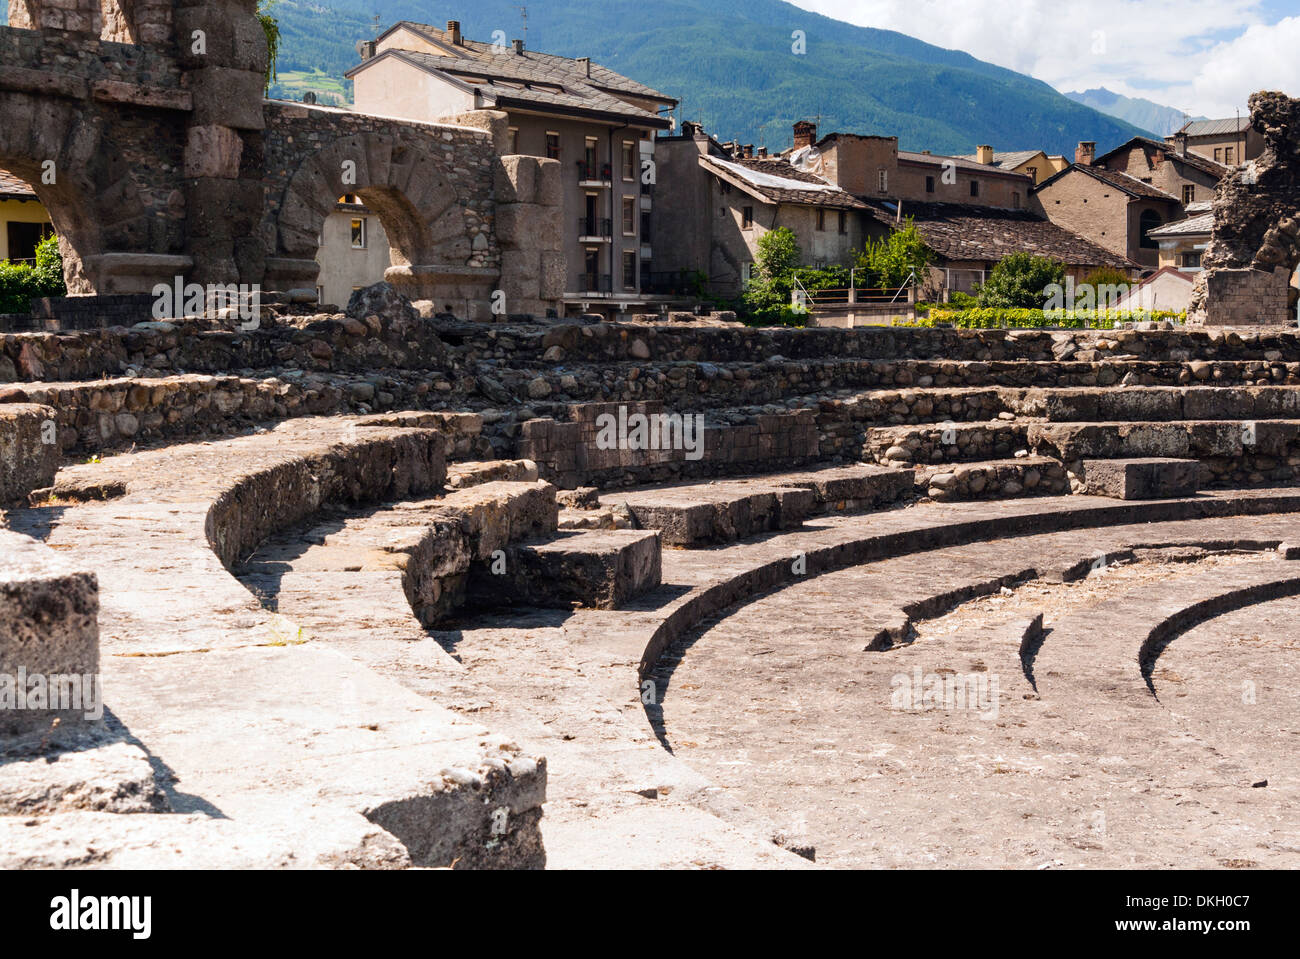 Teatro romano (Teatro Romano), Aosta, Valle d'Aosta, Alpi Italiane, Italia, Europa Foto Stock